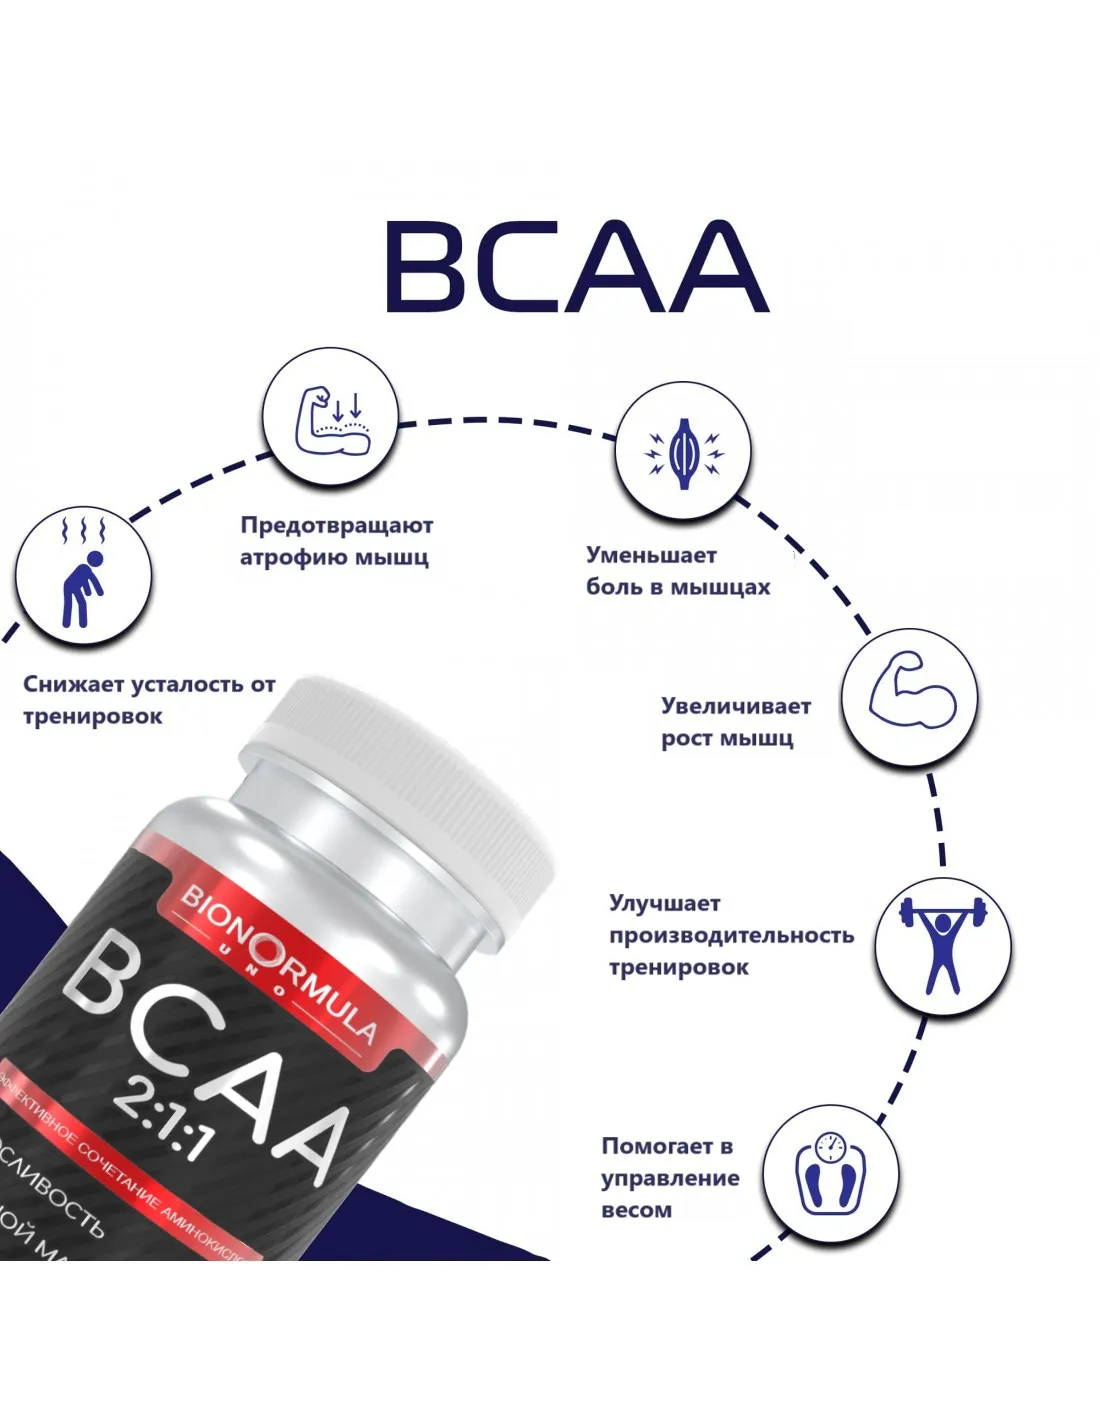 Зачем нужно BCAA